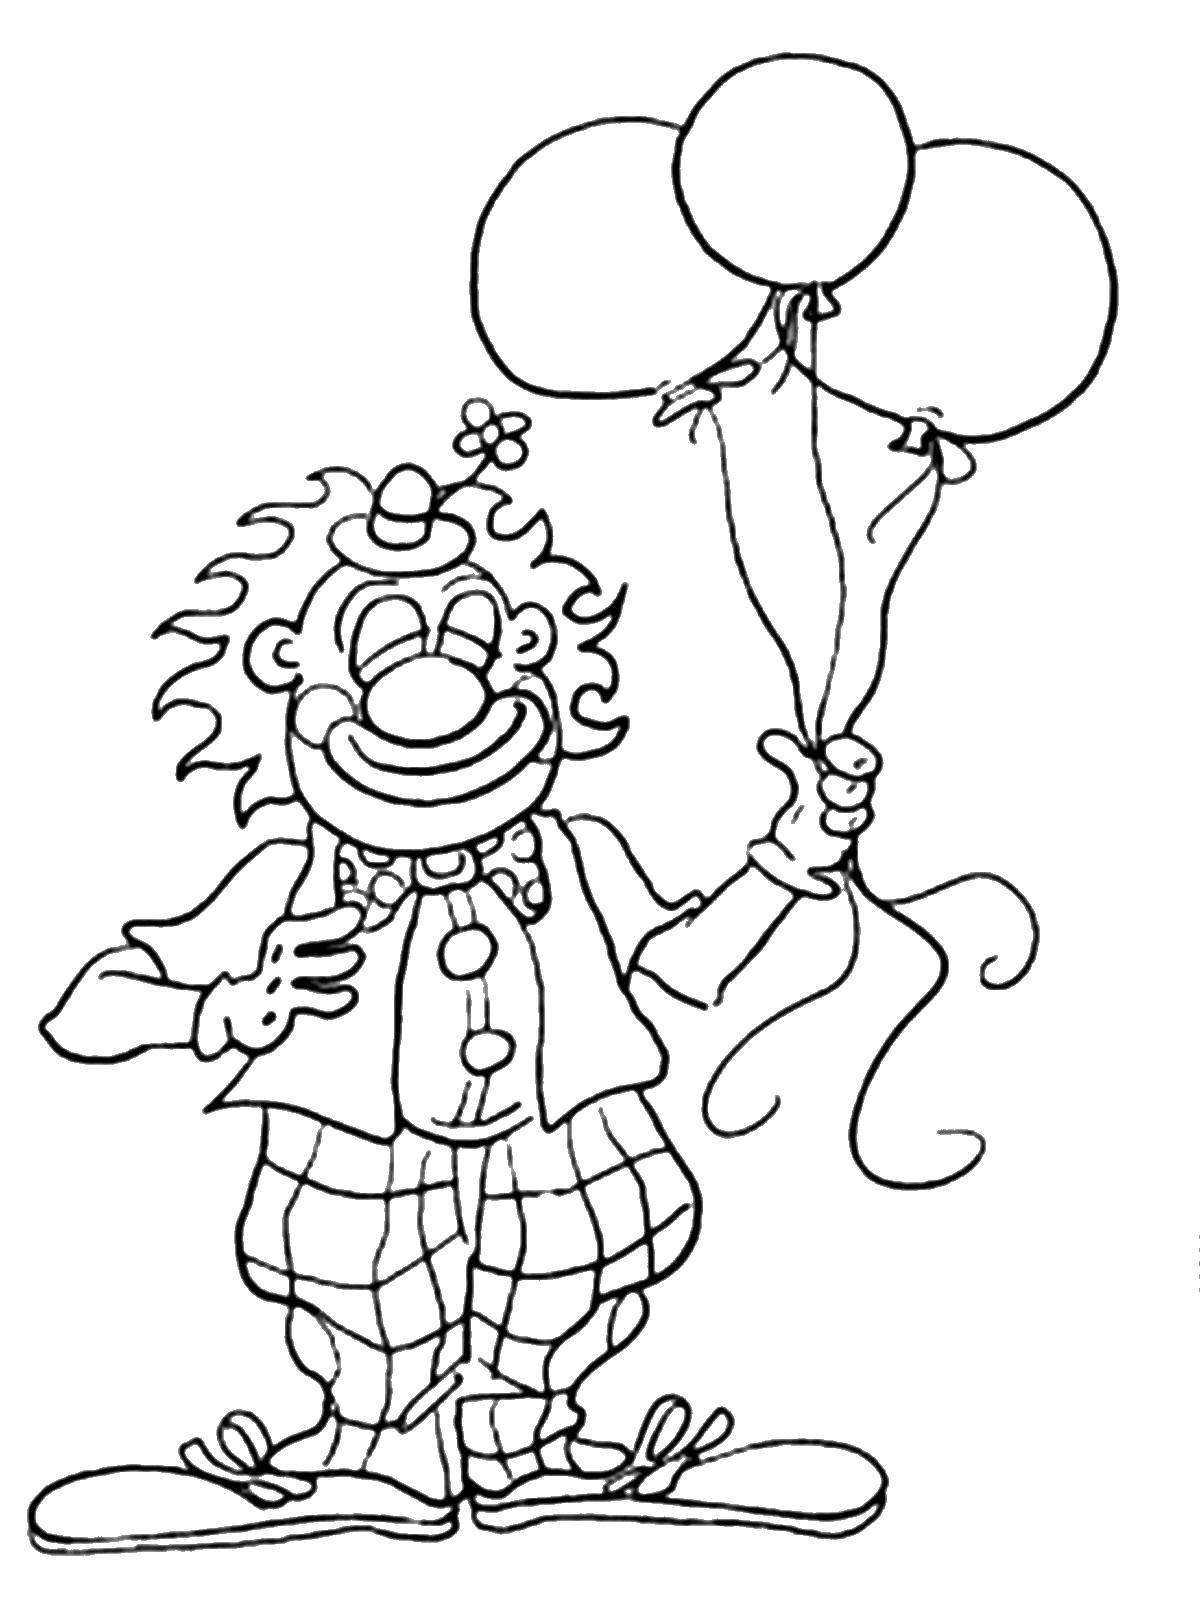 Розмальовки  Кульки у клоуна. Завантажити розмальовку Клоун, цирк, радість, веселощі, кульки.  Роздрукувати ,клоун,